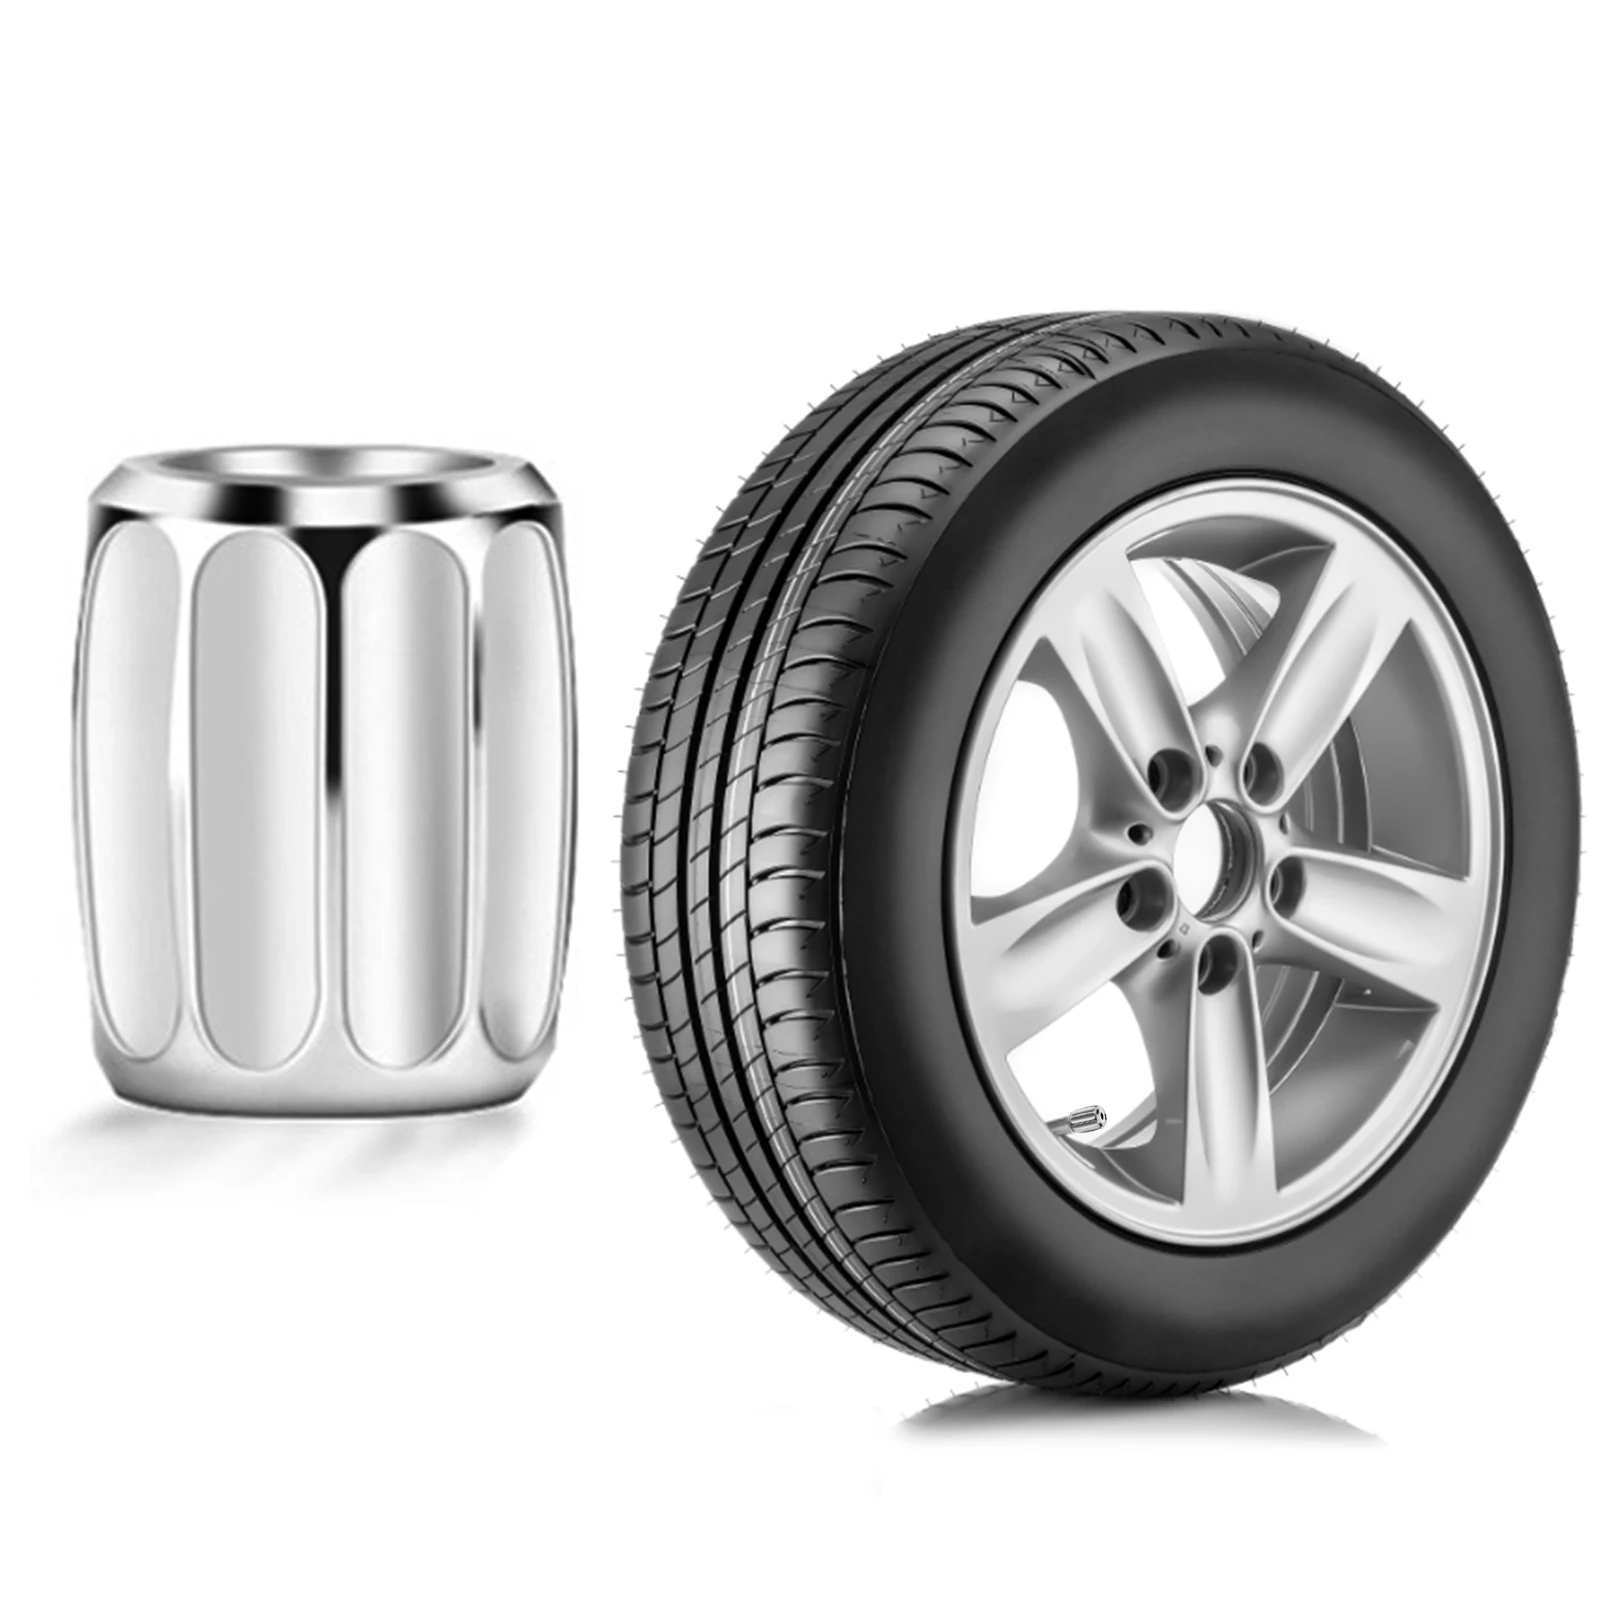 

Колпачки для клапанов шин 4 шт., универсальные колпачки для автомобильных, грузовых, мотоциклетных, внедорожных клапанов